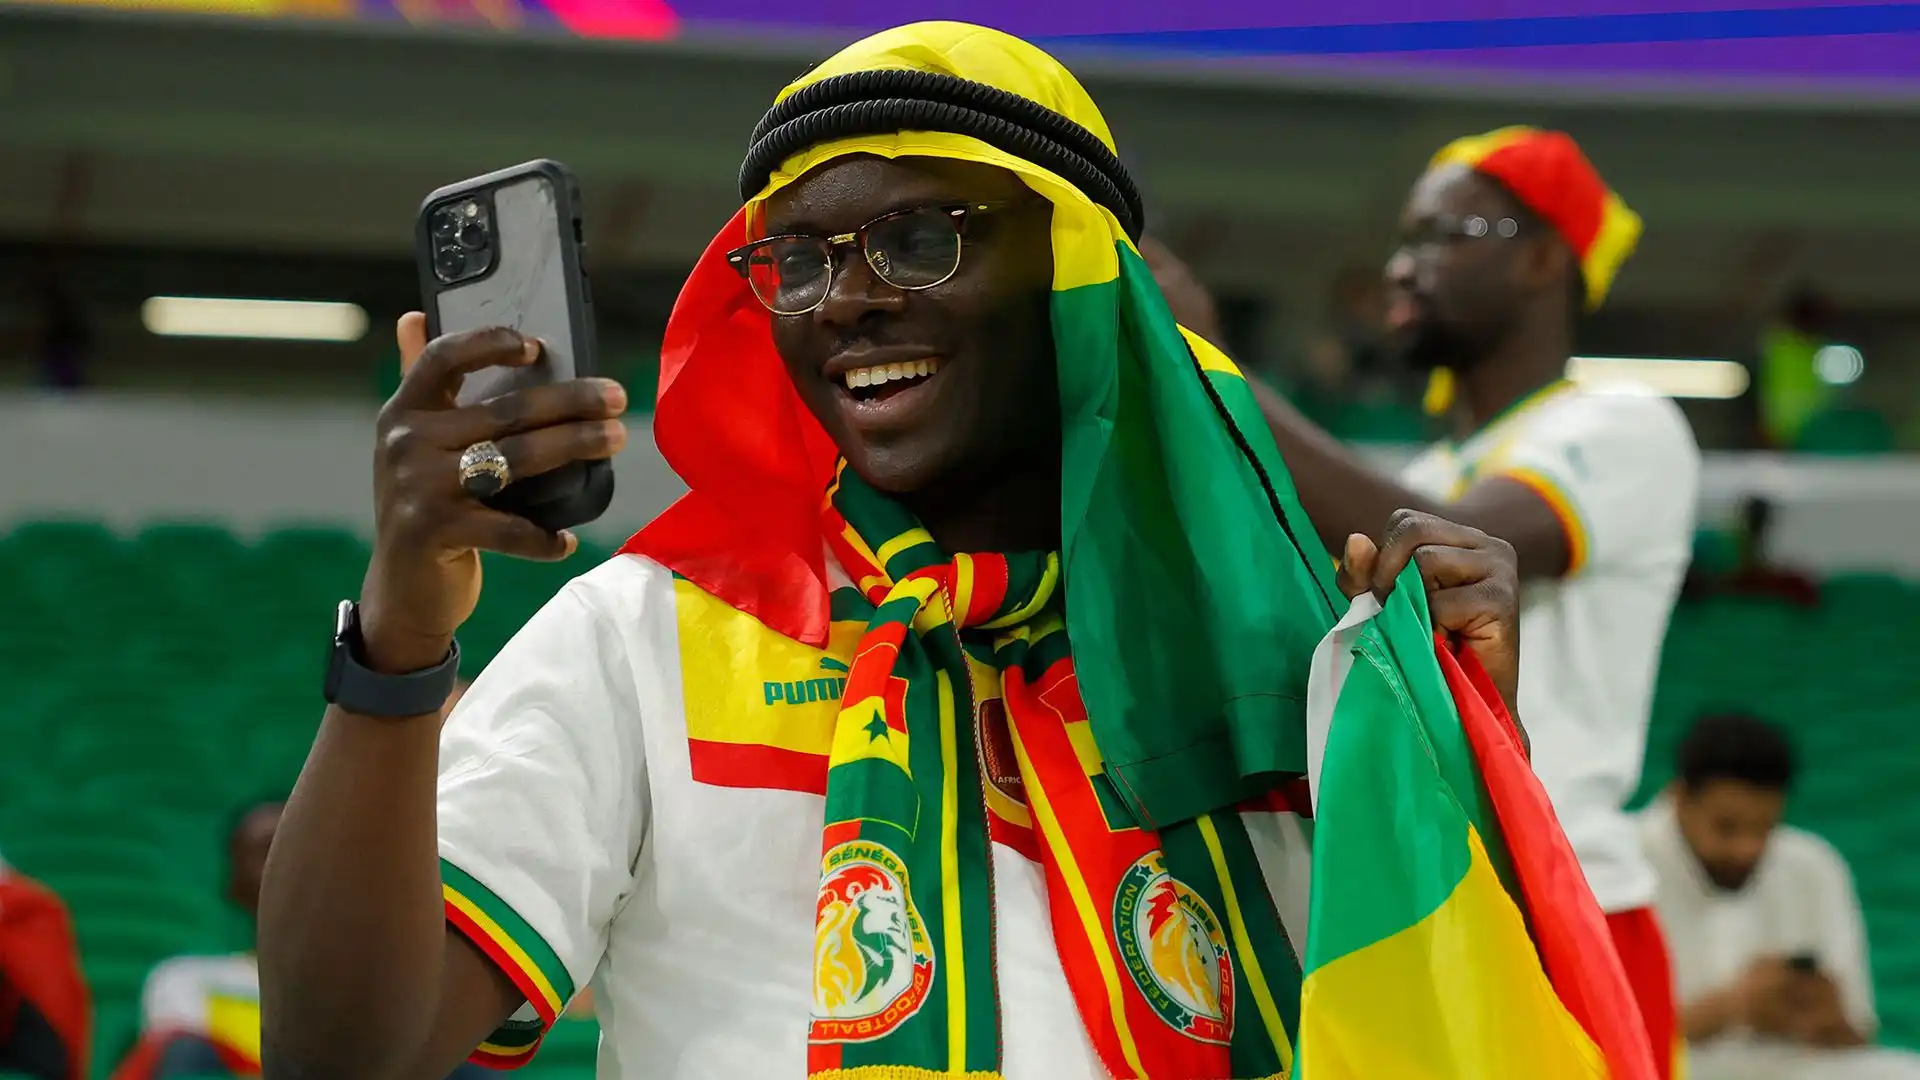 Tifosi durante il match del campionato del mondo di calcio tra Senegal e Olanda